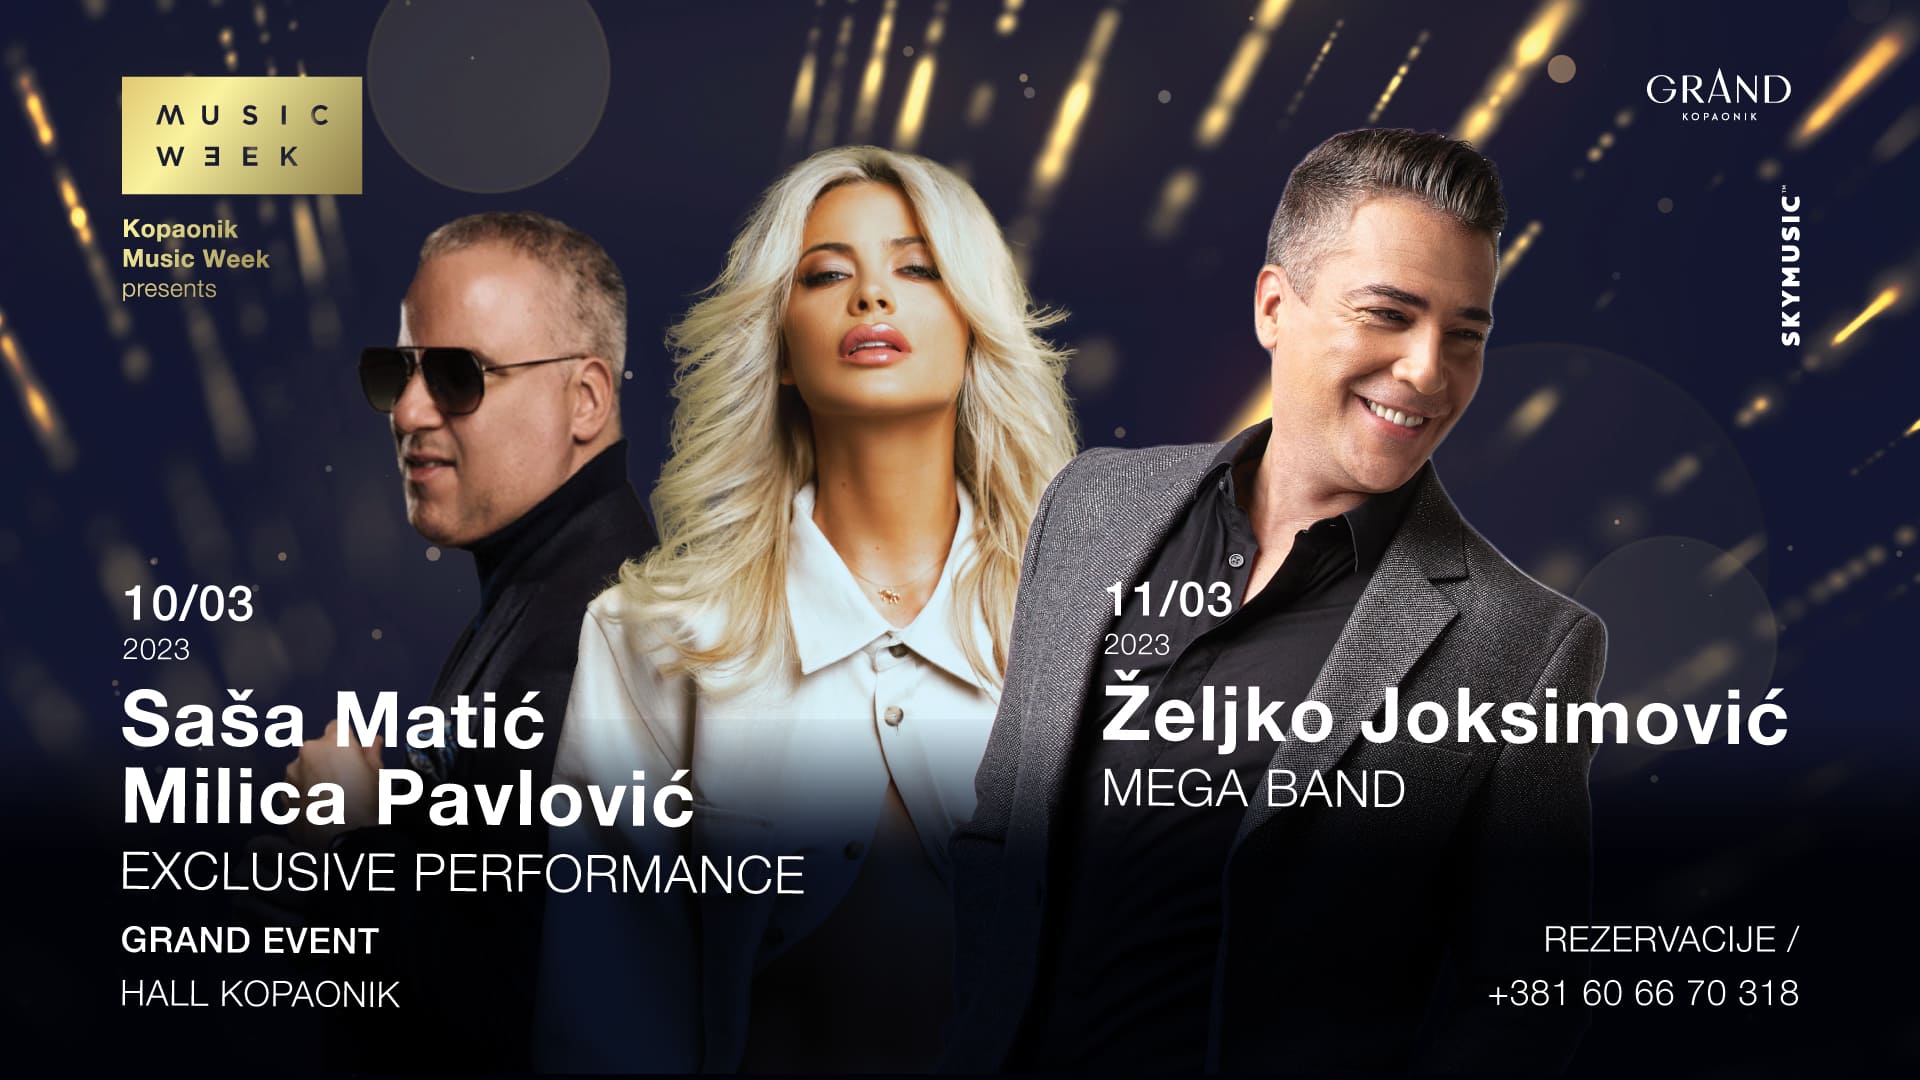 Saša Matić, Milica Pavlović, Željko Joksimović, Lepa Brena and Dino Merlin this year at Kopaonik Music Week